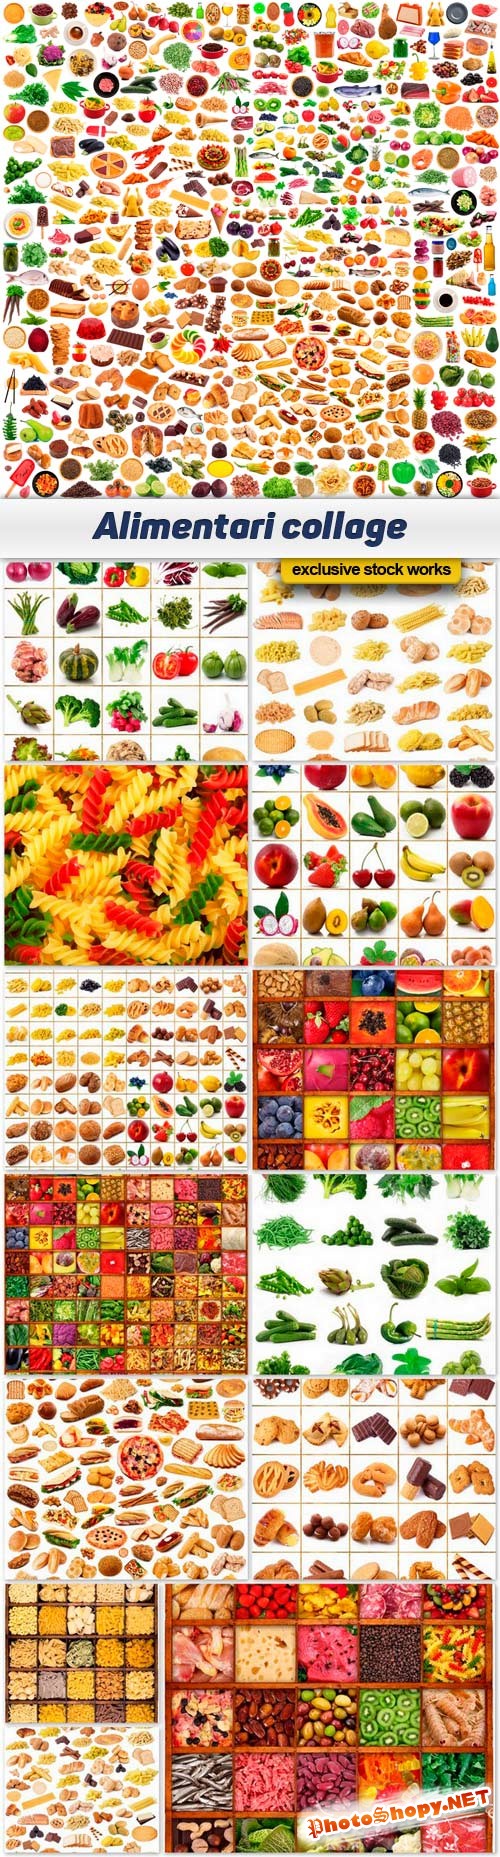 Alimentari collage - 15 UHQ JPEG 